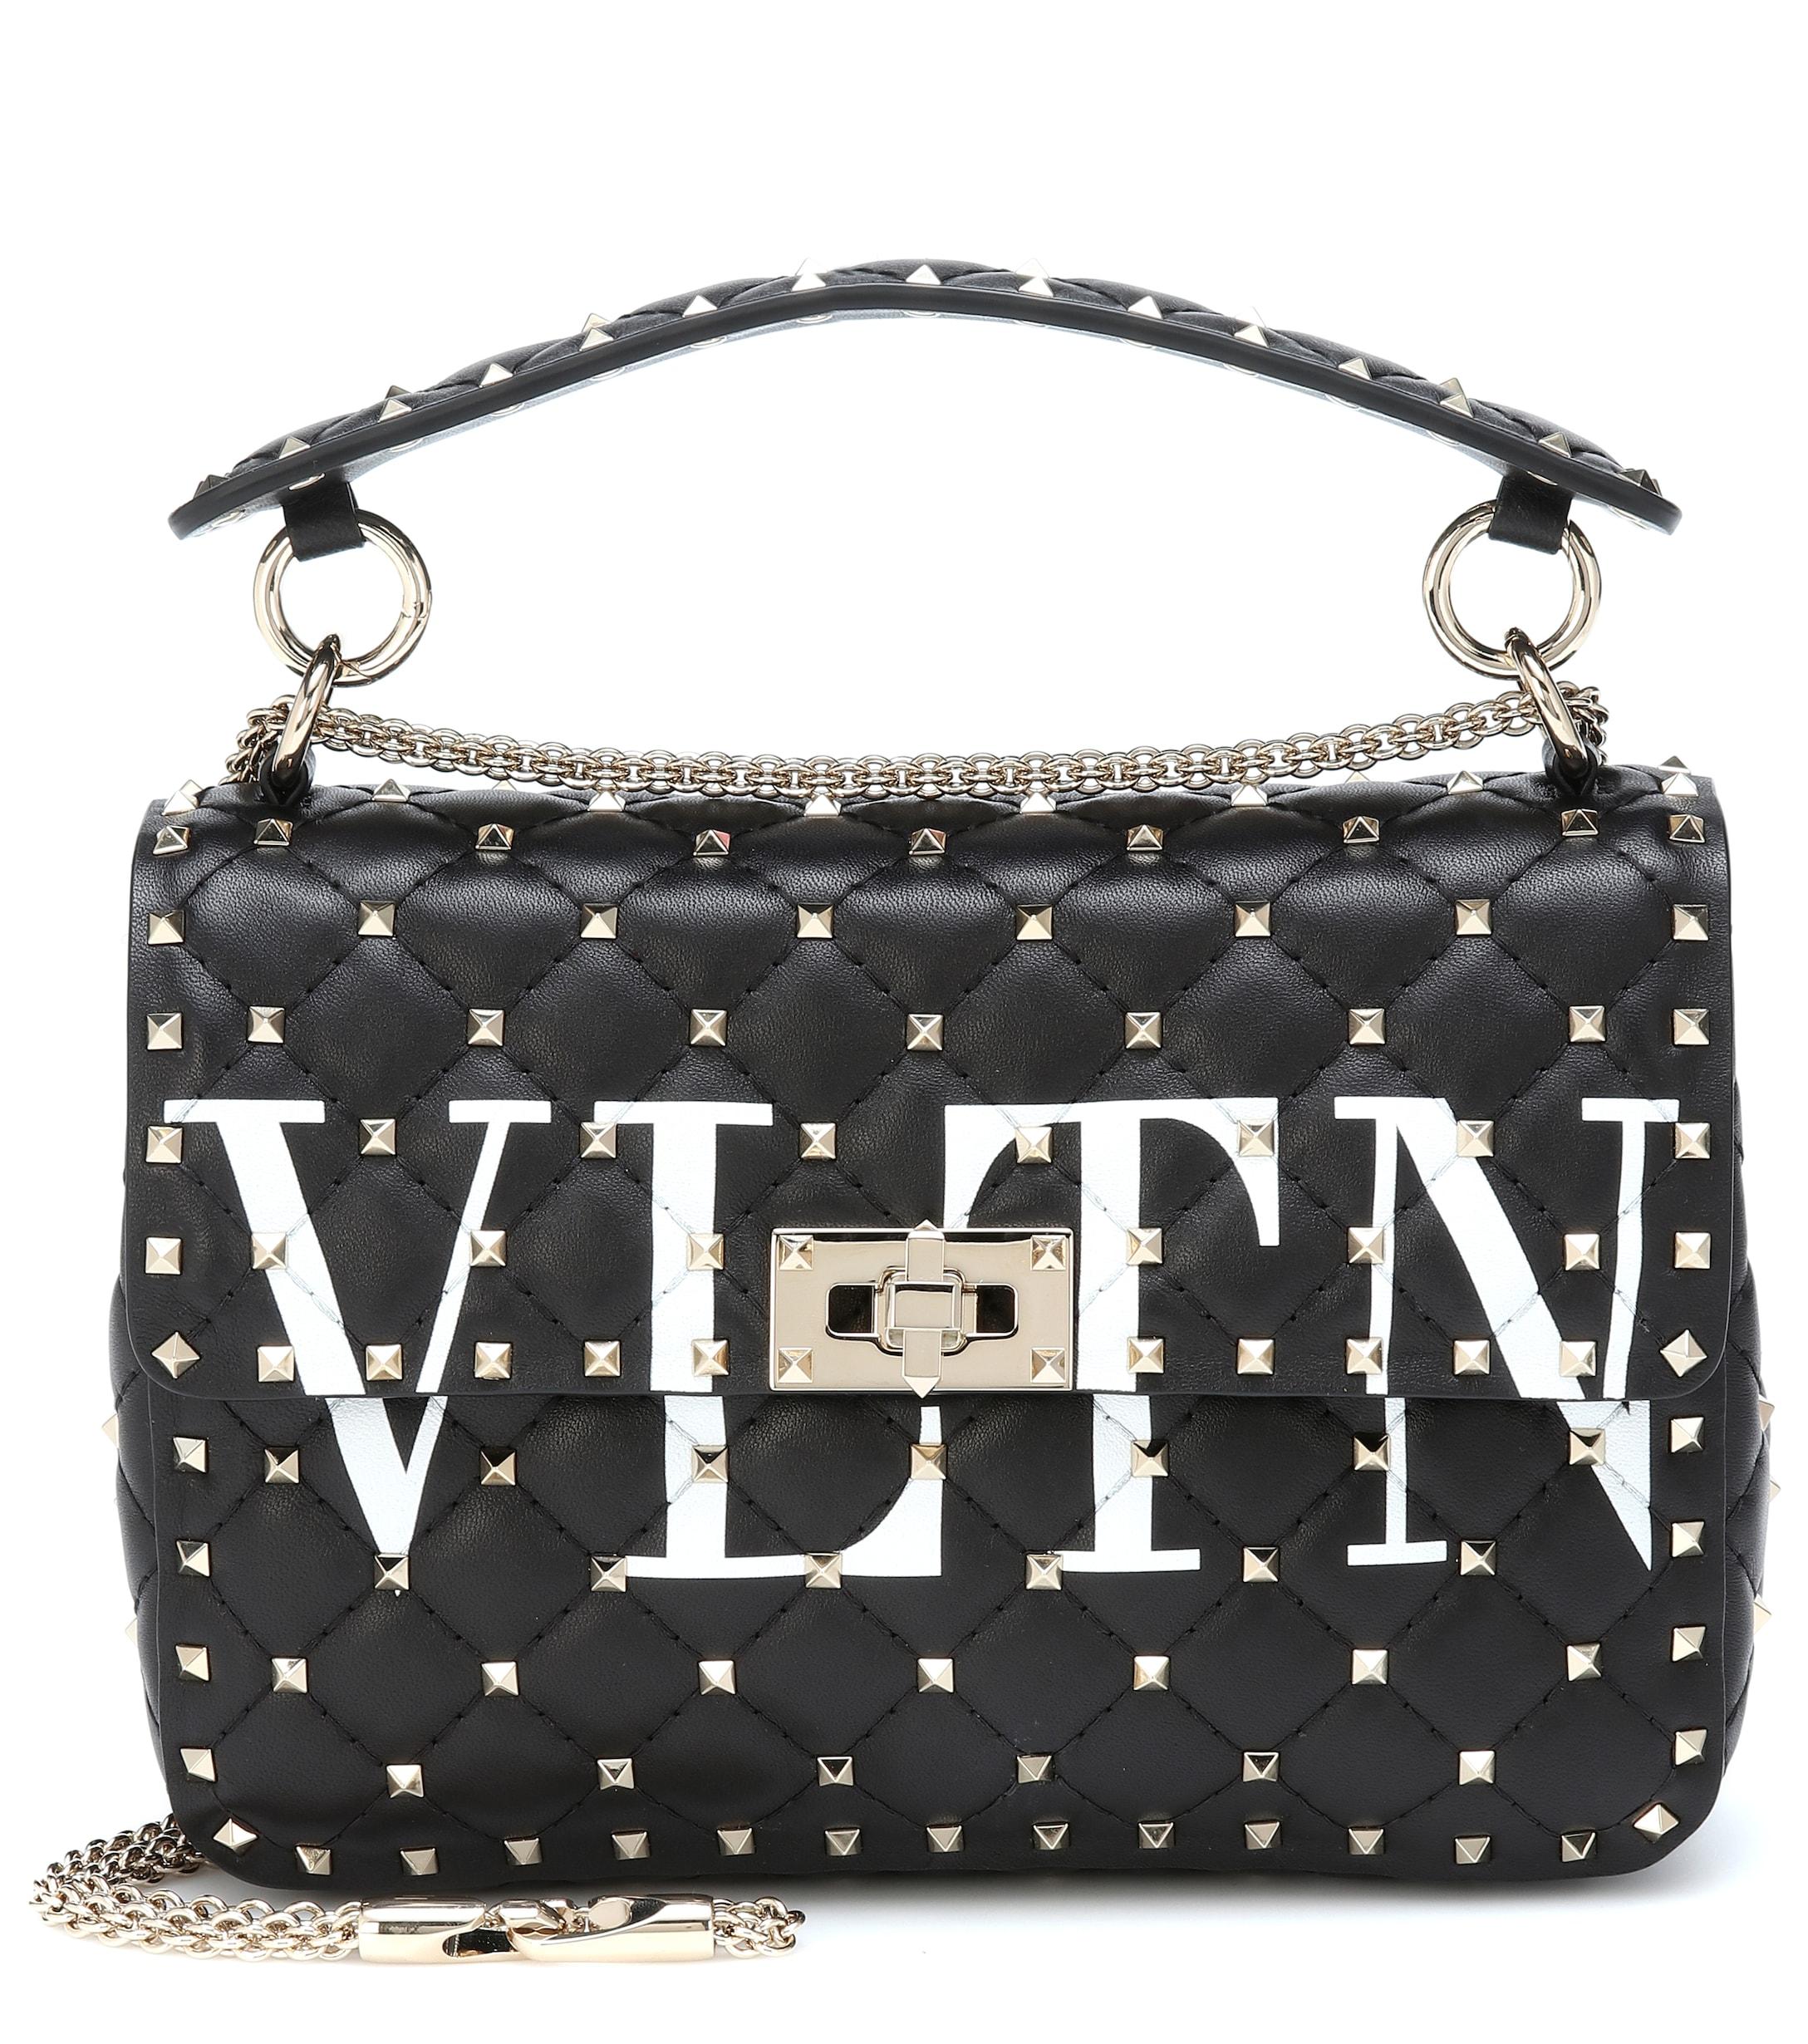 Valentino Vltn Rockstud Spike Leather Shoulder Bag in Black - Lyst